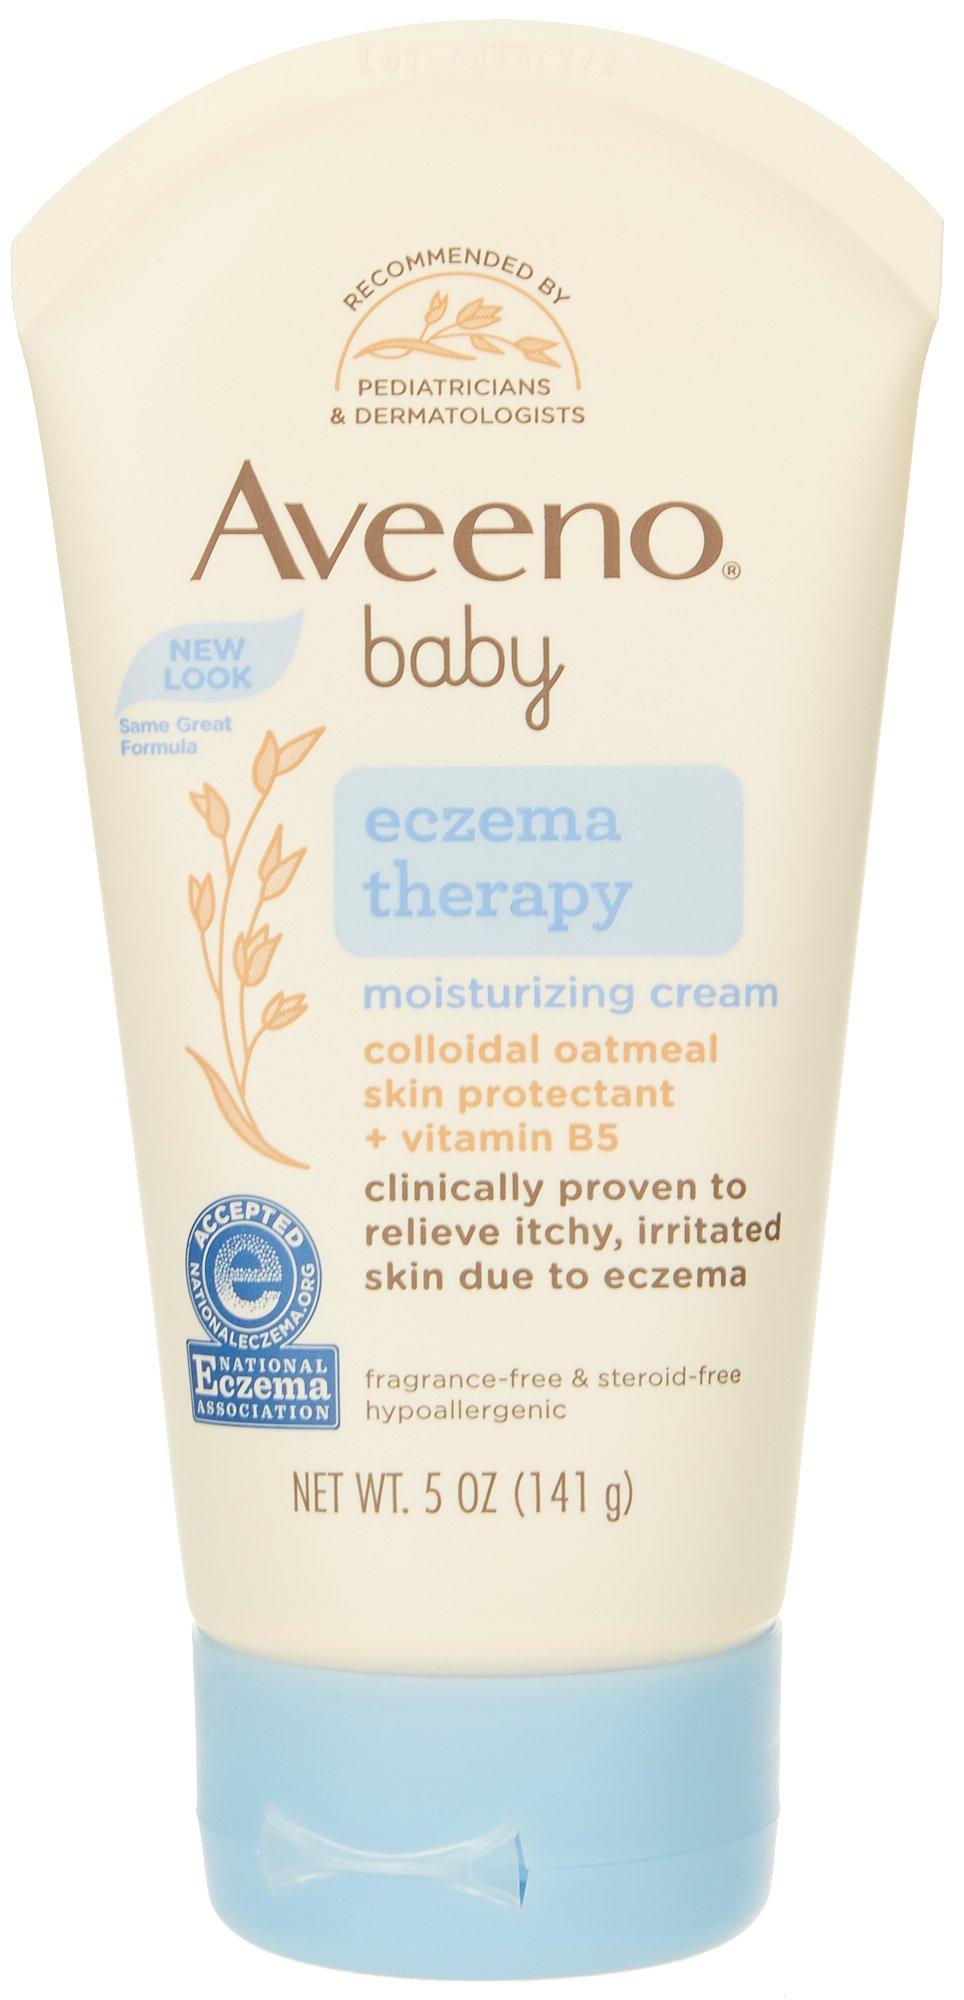 Aveeno Baby 5 Fl.Oz. Eczema Therapy Moisturizing Cream